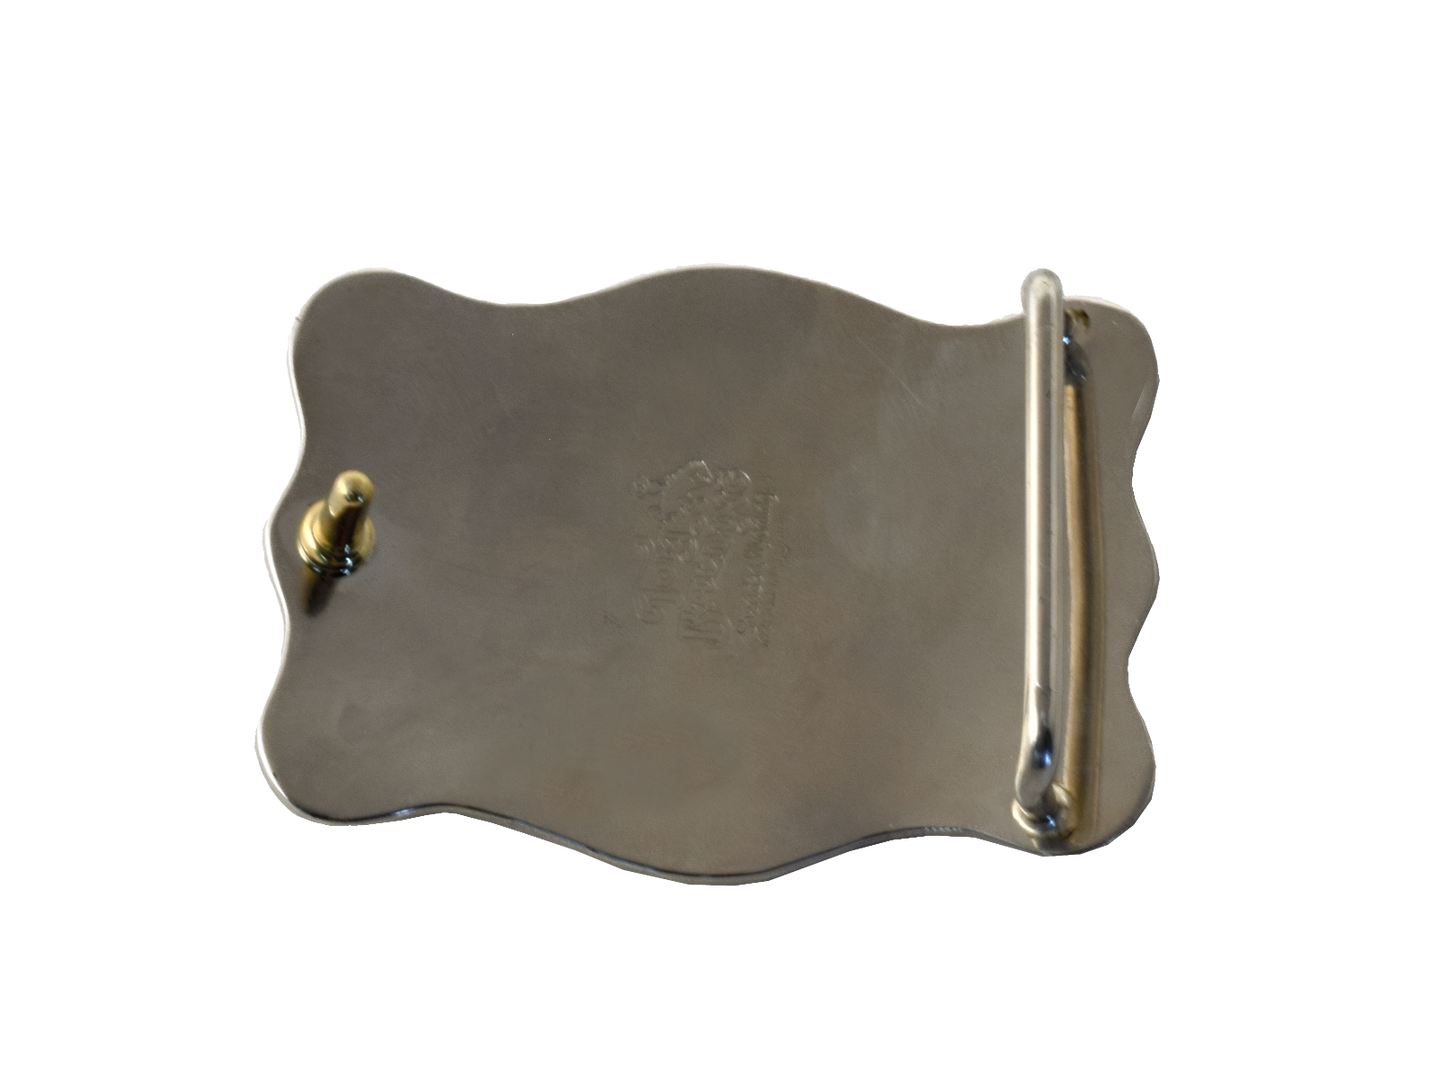 Hebilla de cinturón LG personalizable con borde festoneado en plata alemana